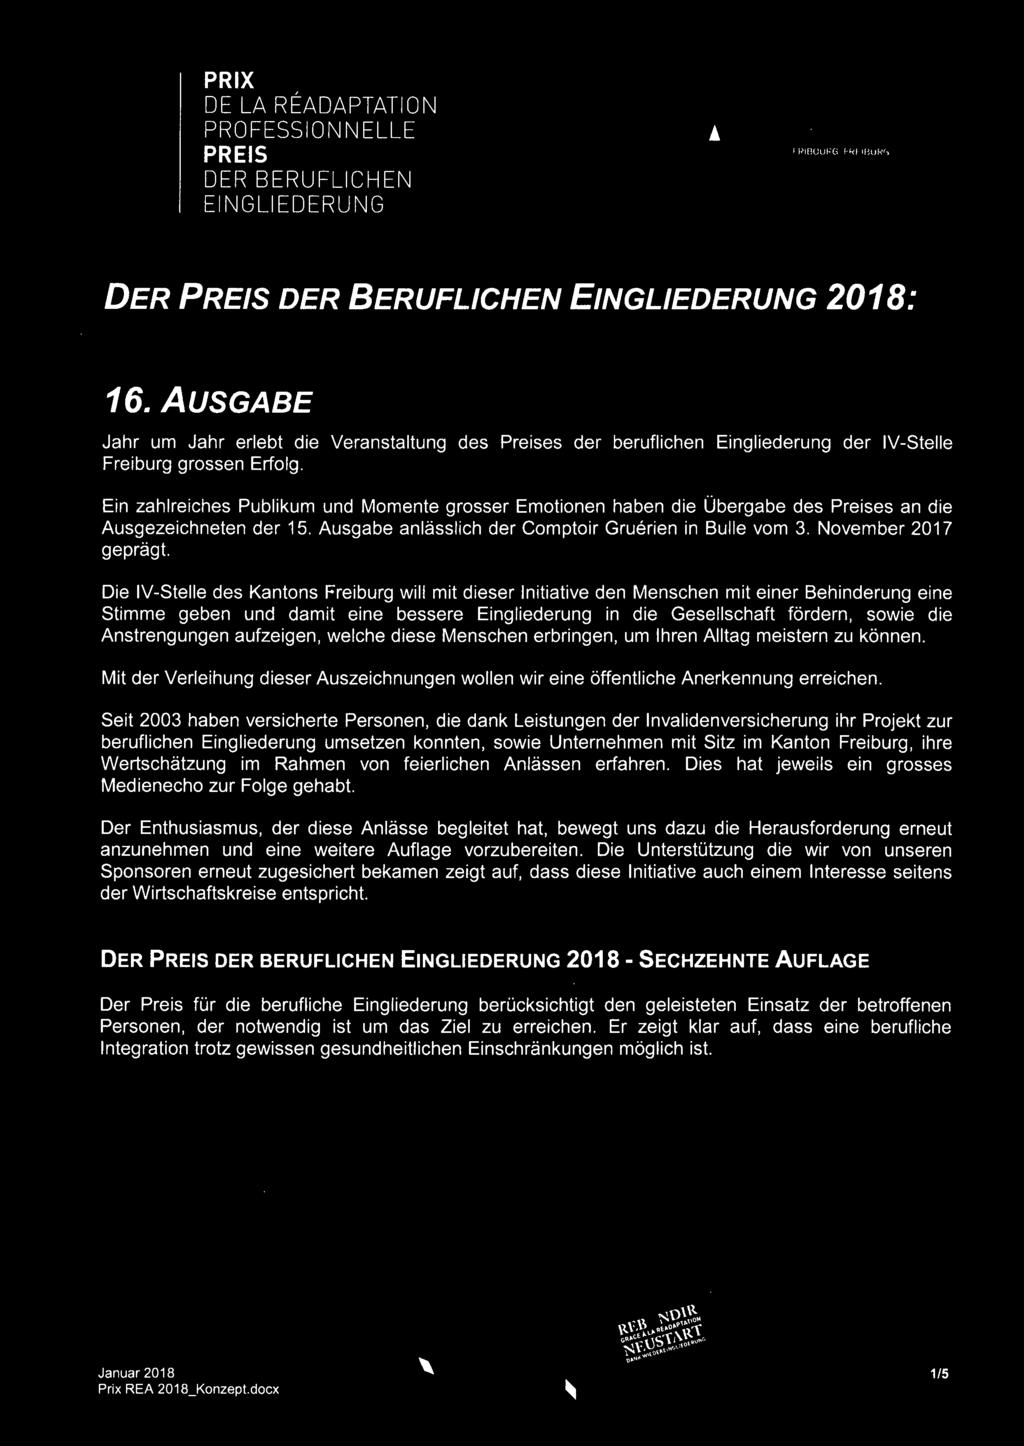 Ein zahlreiches Publikum und Momente grosser Emotionen haben die Übergabe des Preises an die Ausgezeichneten der 15. Ausgabe anlâsslich der Comptoir Gruérien in Bulle vom 3. November 2017 qeprâqt.